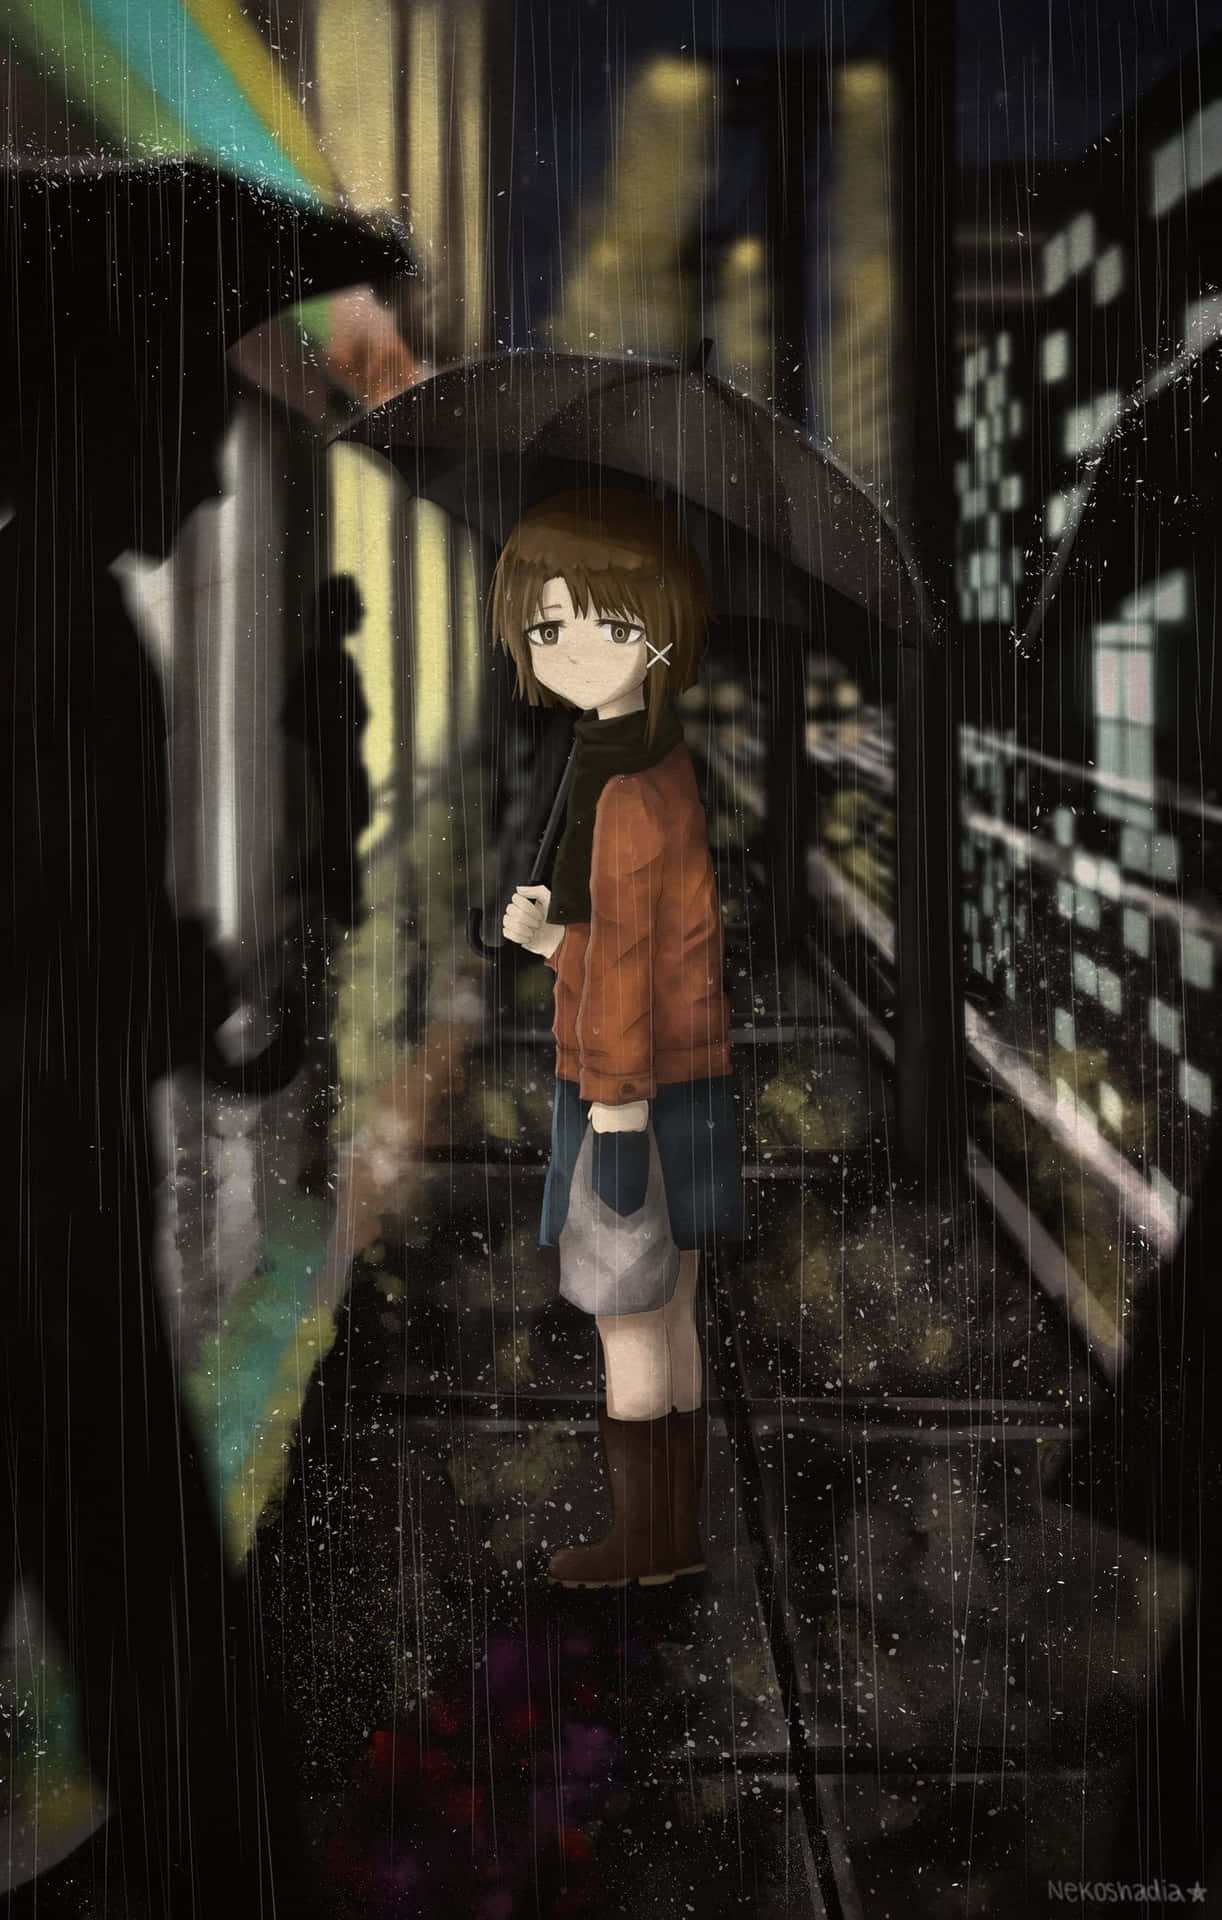 Einmädchen Mit Einem Regenschirm Steht Im Regen. Wallpaper